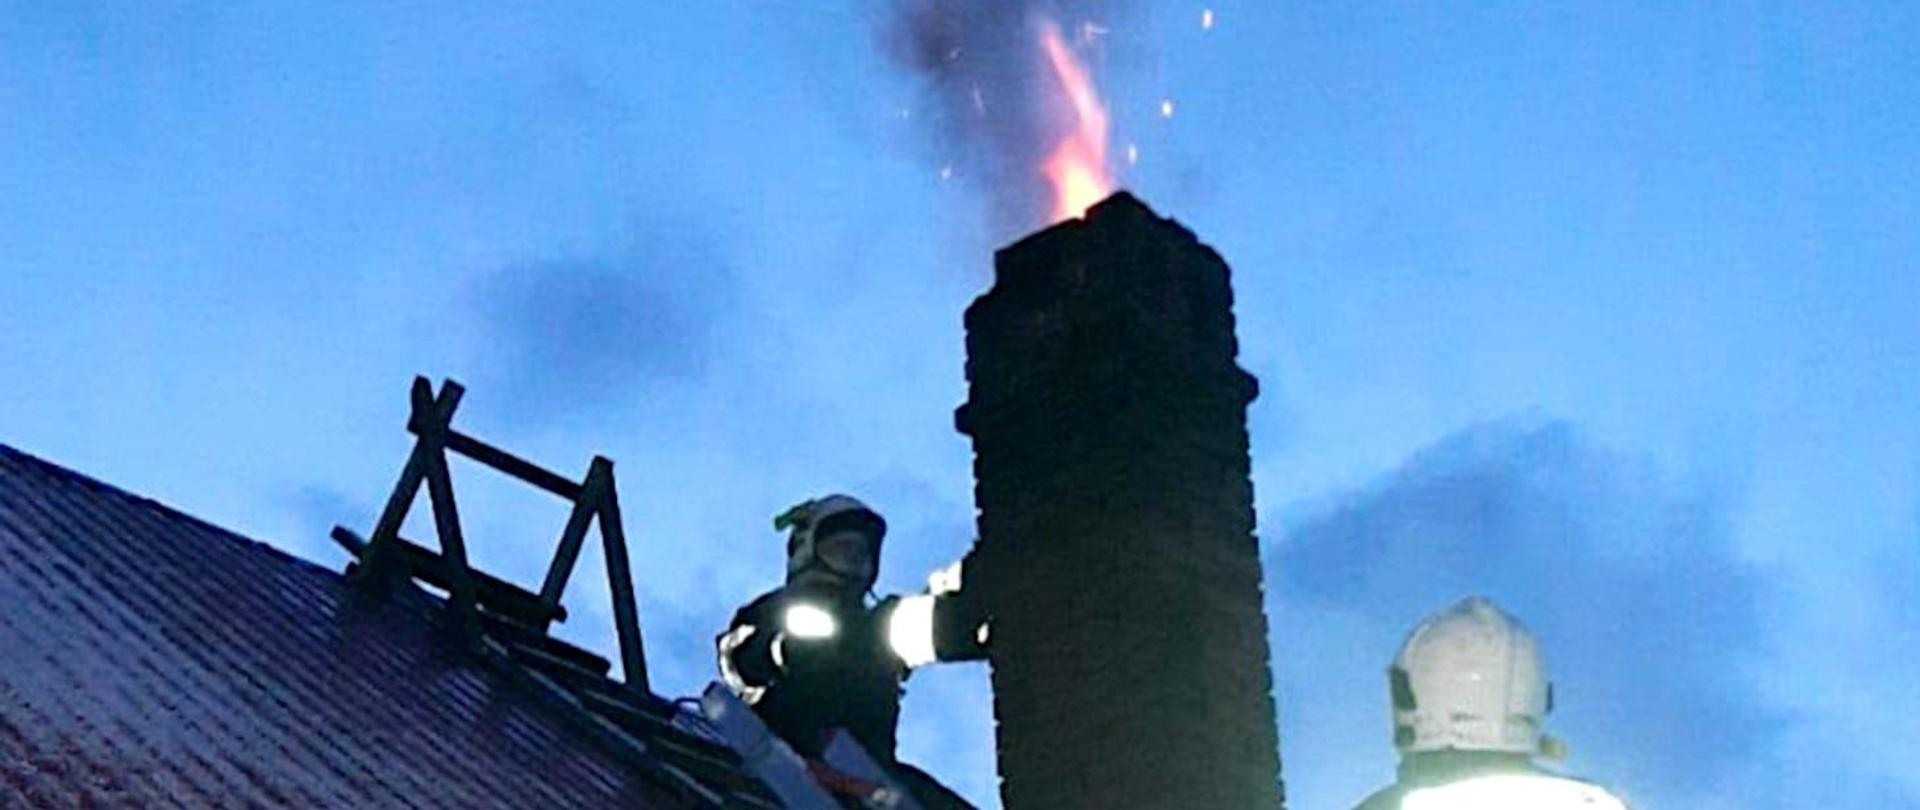 Na zdjęciu widoczny jest fragment dachu budynku i komin, z którego wydobywa się płomień z palących się sadzy. Obok komina dwóch strażaków w ubraniach specjalnych i hełmach.